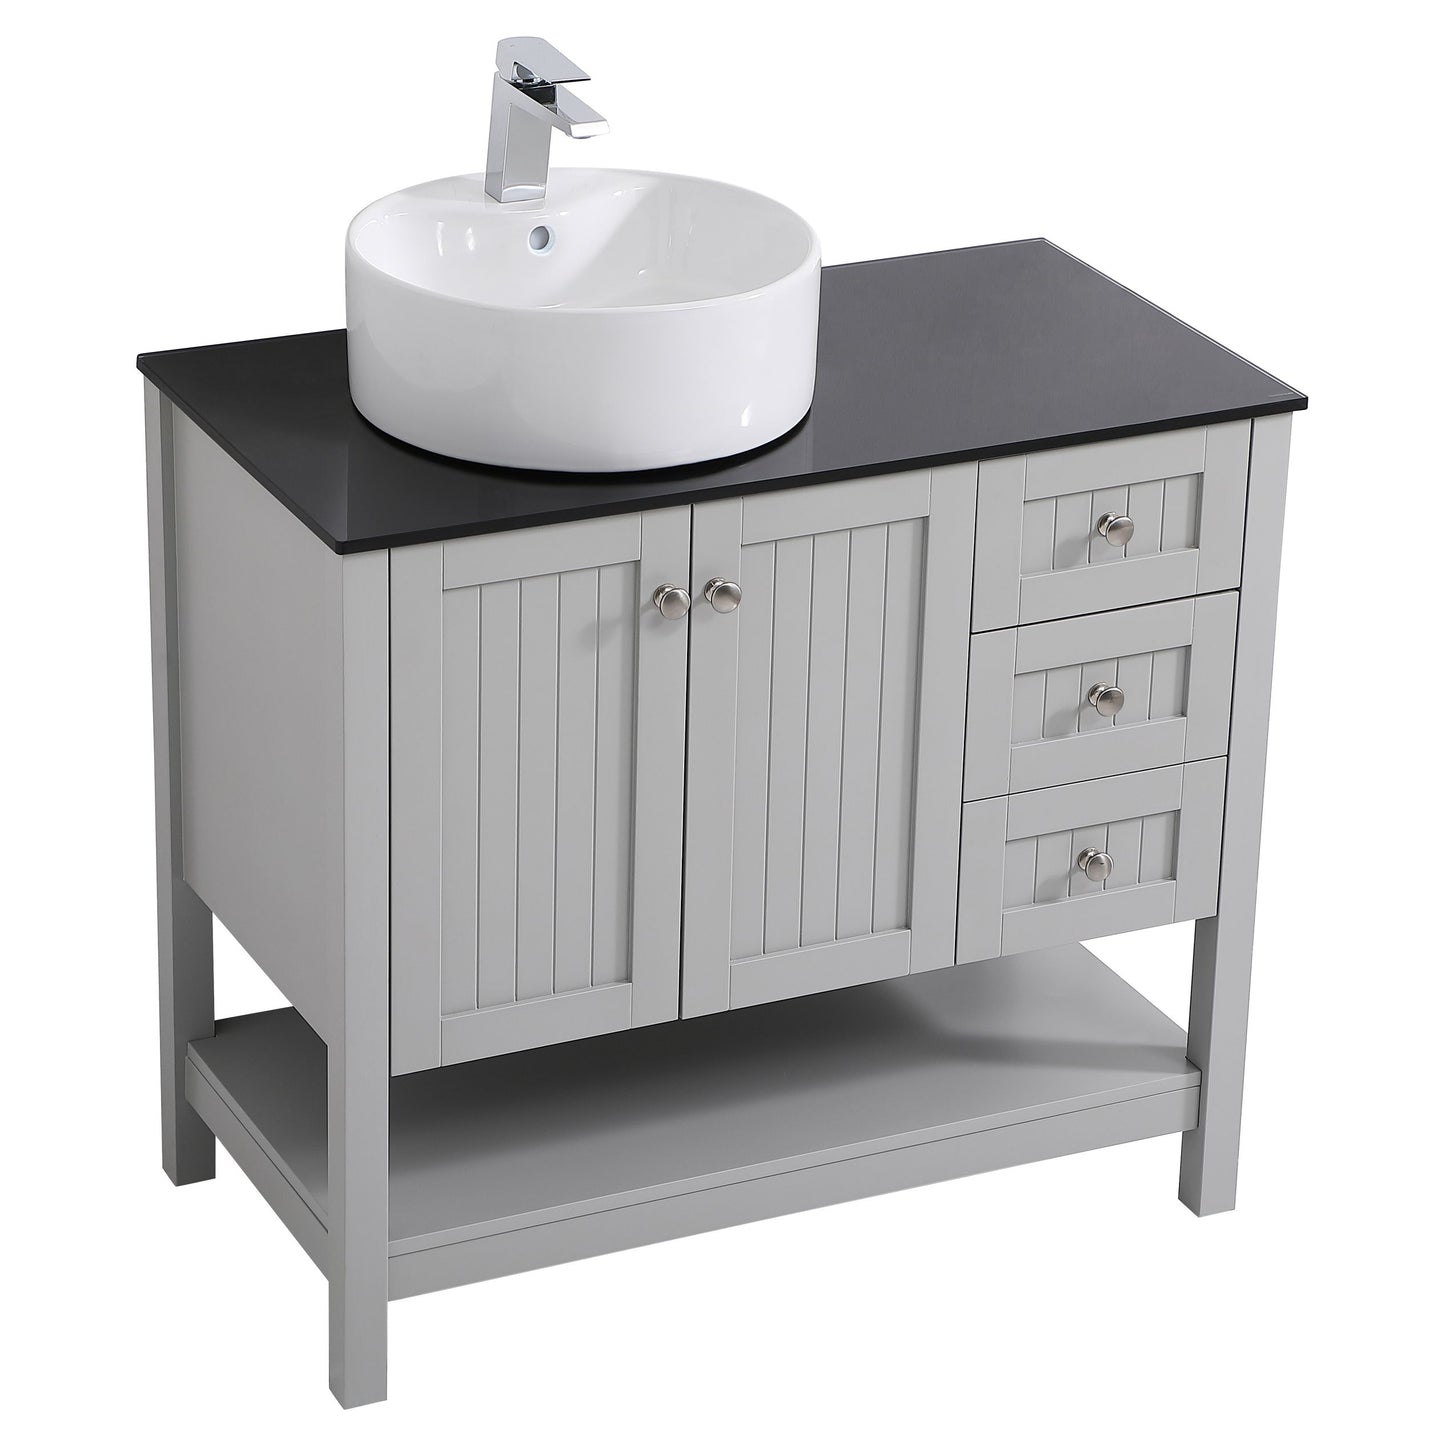 VF16236GR 36" Vessel Sink Bathroom Vanity in Gray